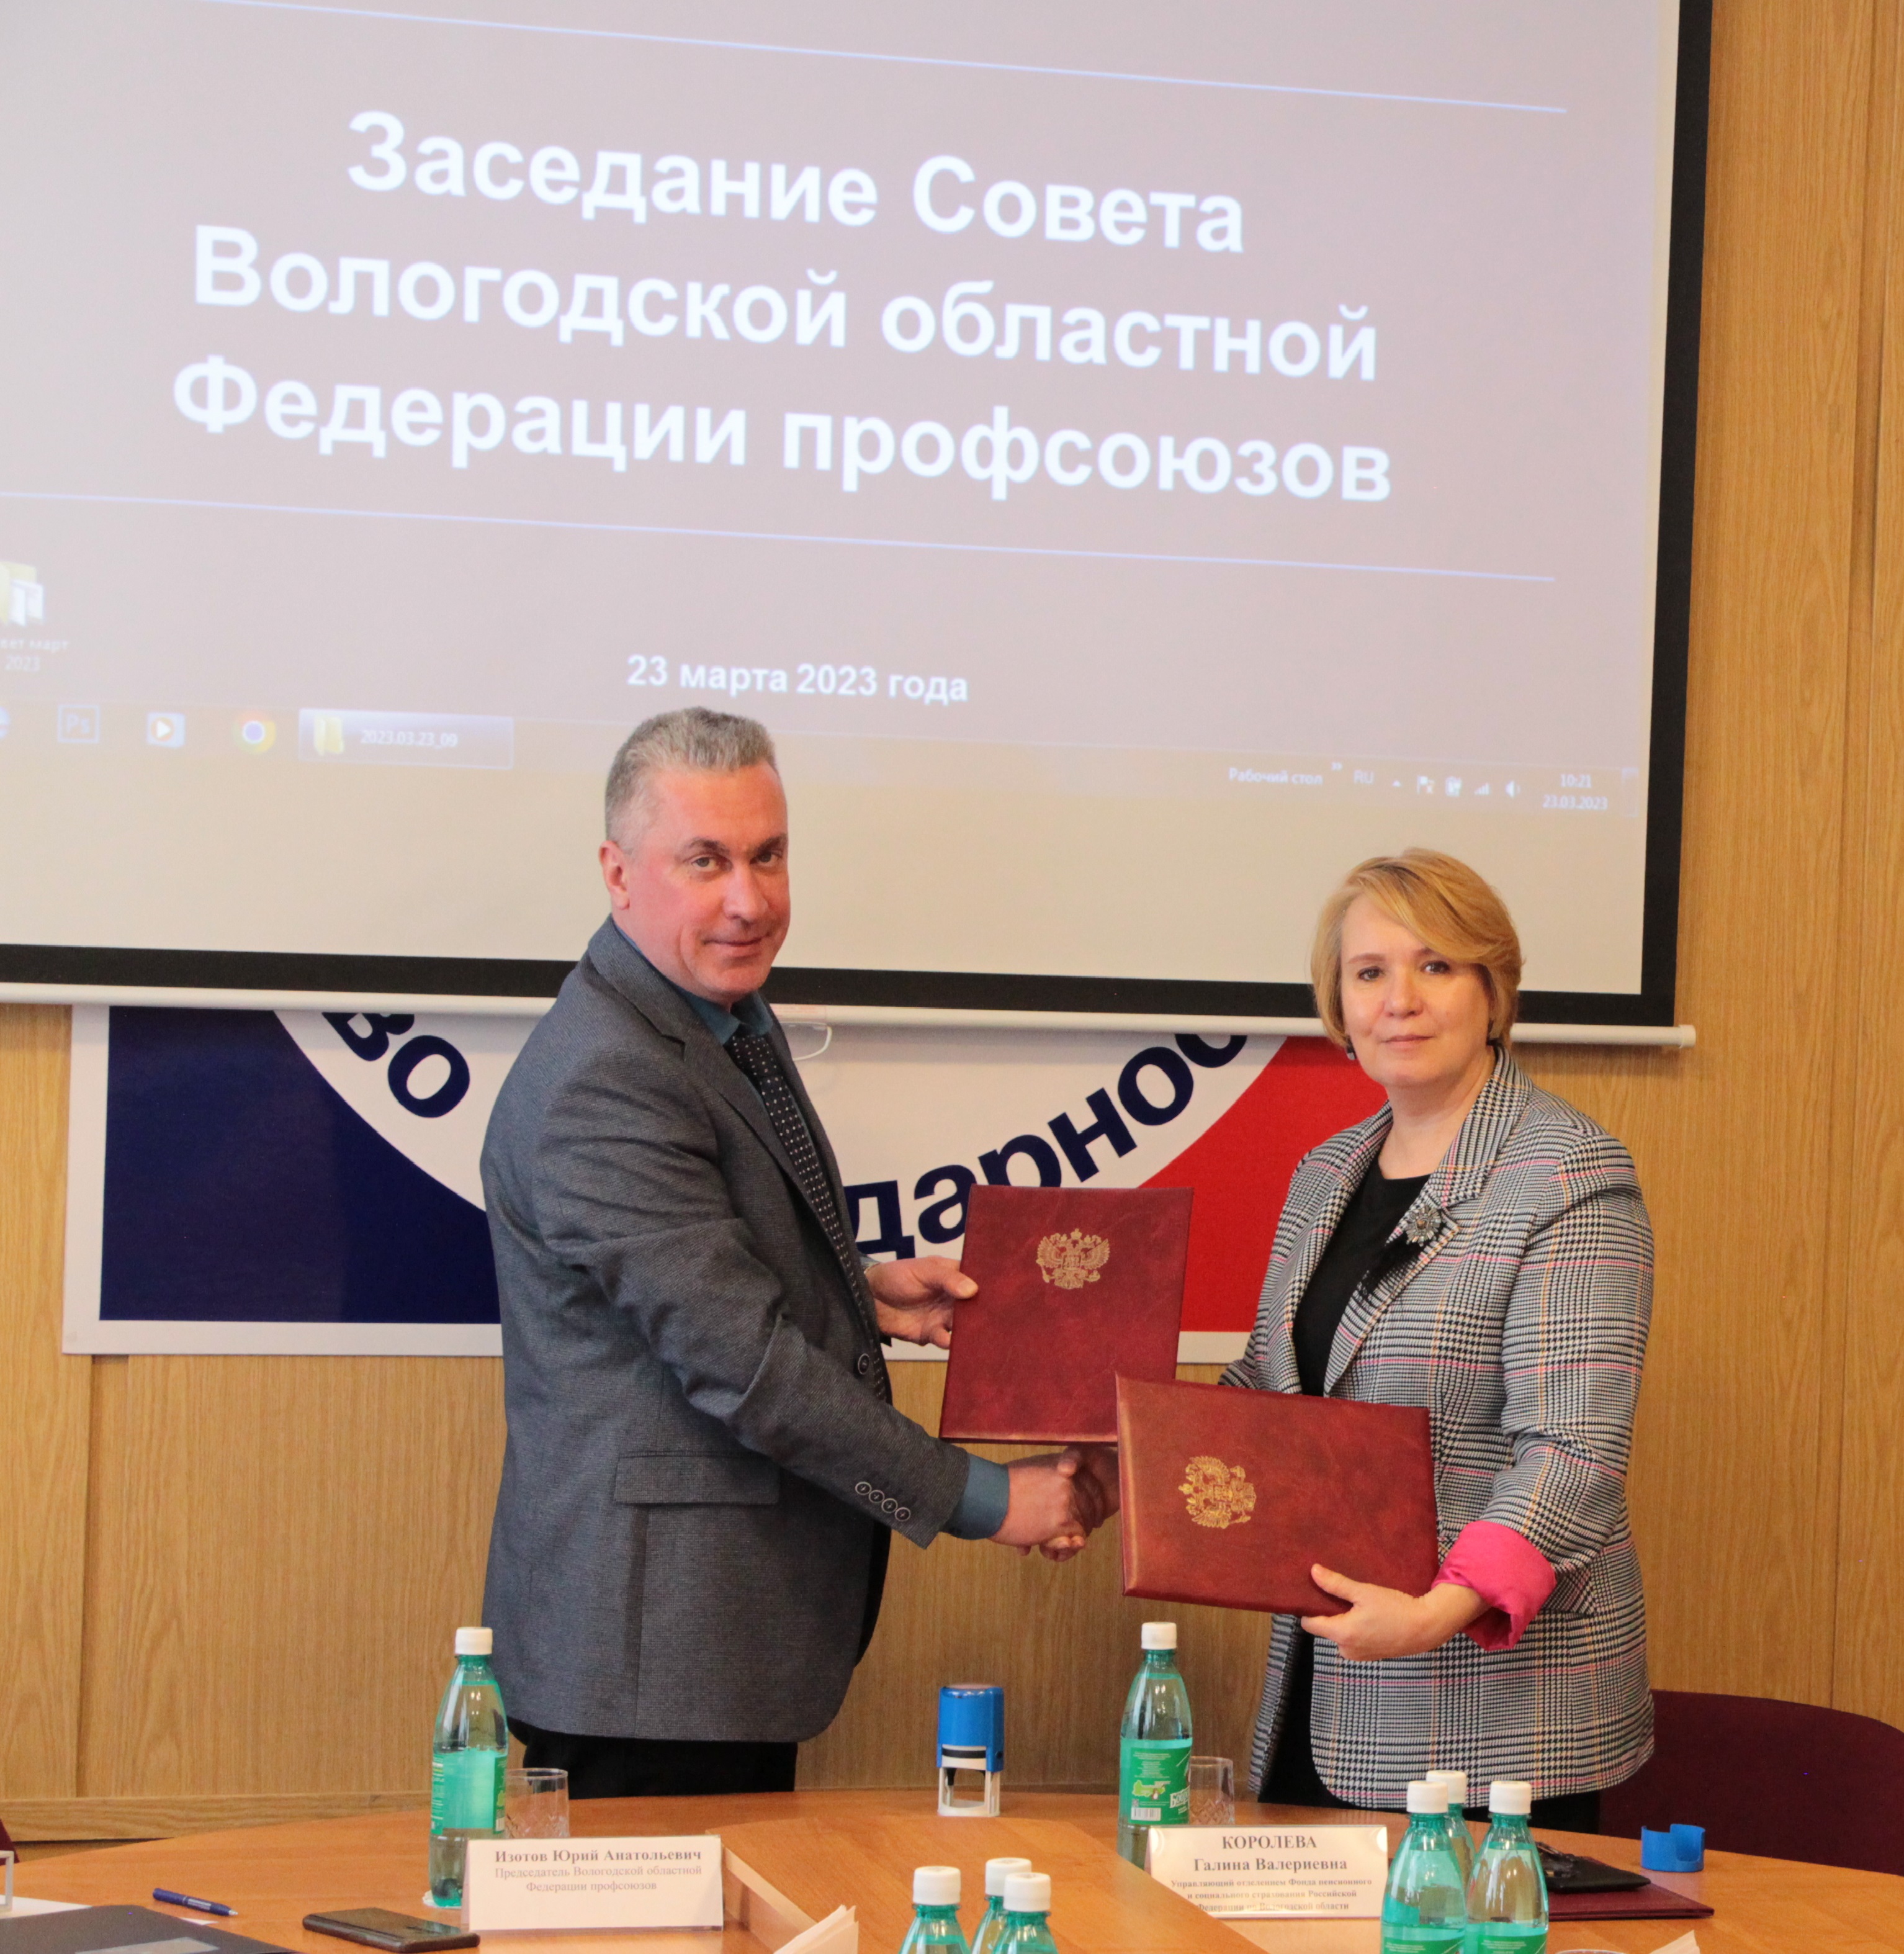 Региональное  Отделение Социального фонда заключило соглашение с Вологодской областной Федерацией профсоюзов.